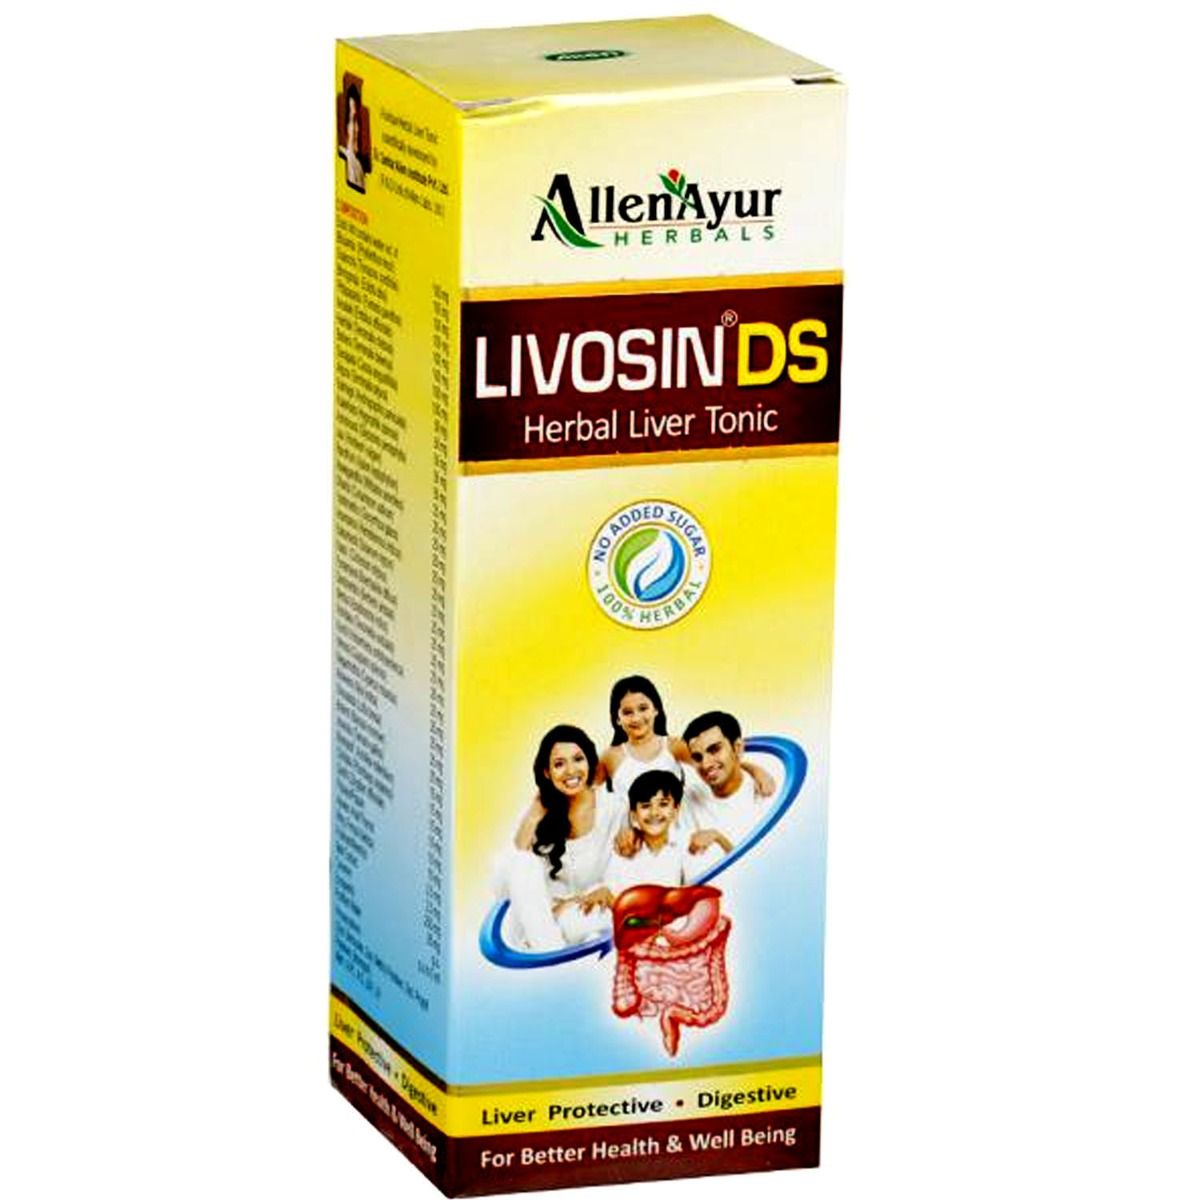 Buy Livosin DS Herbal Liver Tonic, 200 ml Online